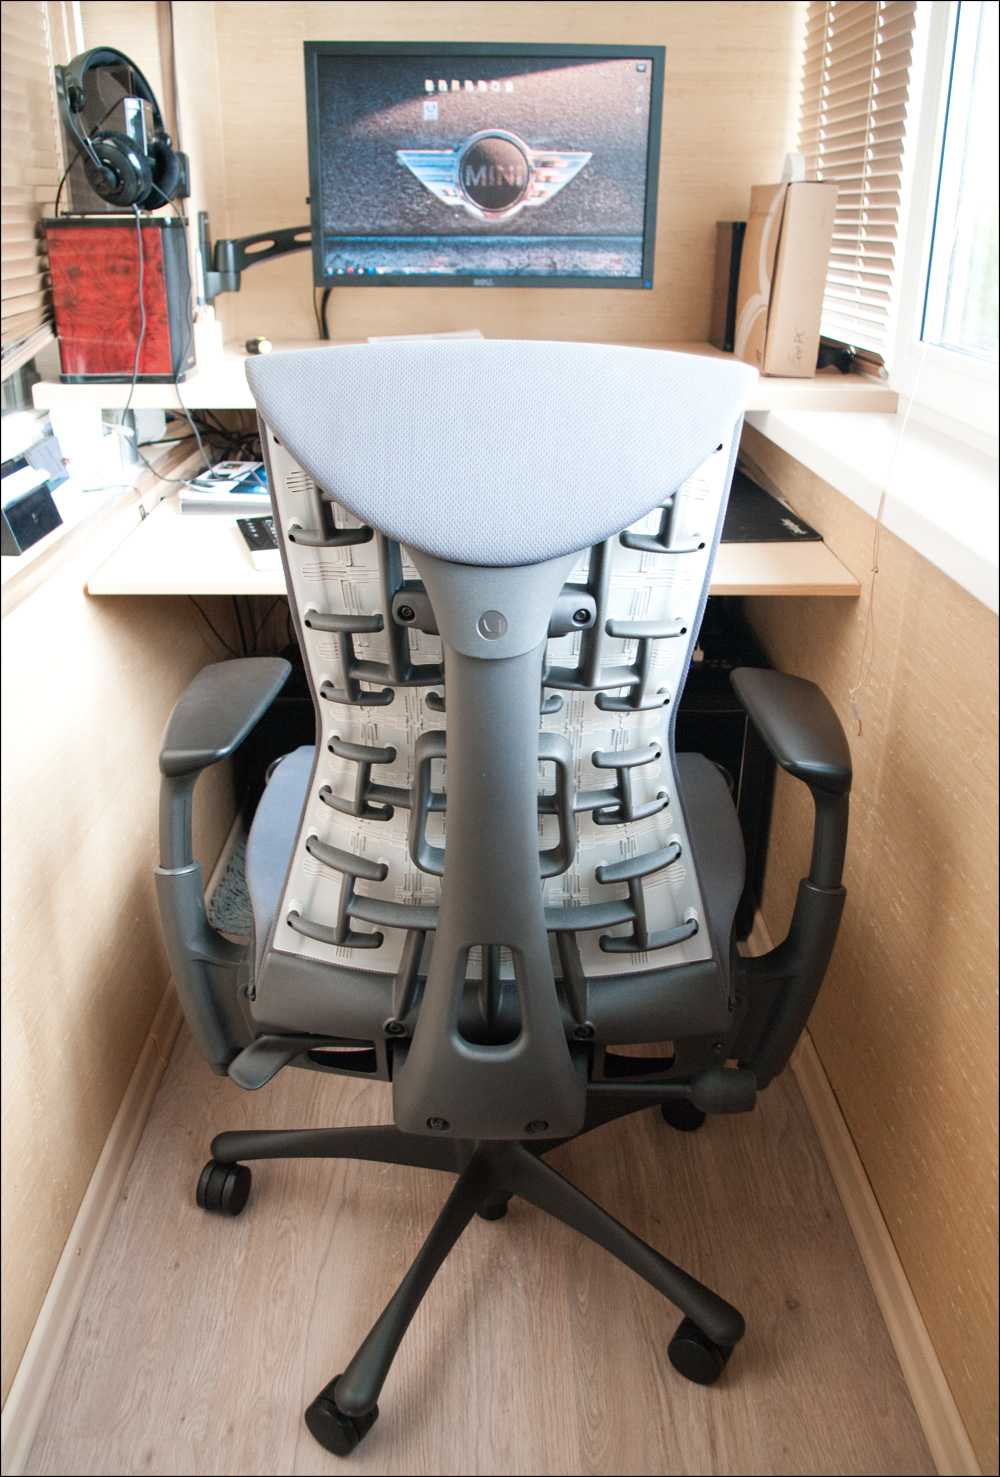 Компьютерное кресло своими руками: чертеж и схема, особенности изготовления и ремонта